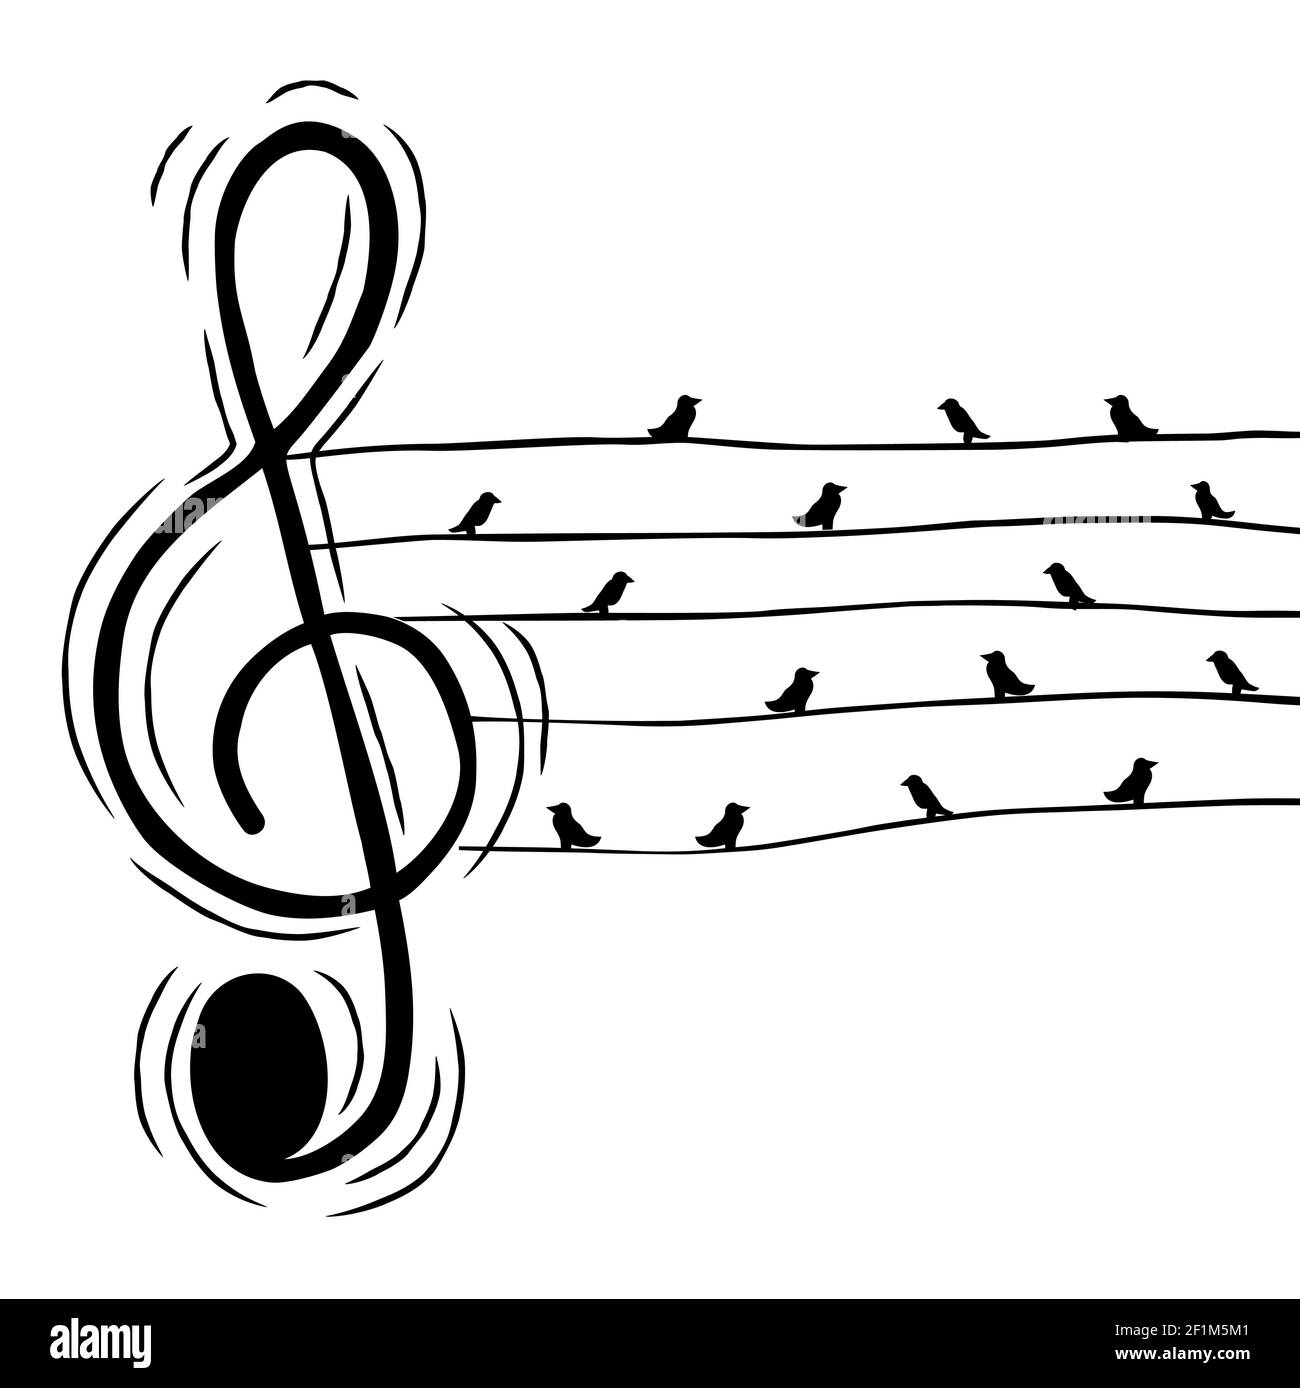 Musica acuti nota clef con uccelli in wire illustrazione per evento musicale o concetto di suono della natura. Cartone animato disegnato a mano su sfondo isolato. Illustrazione Vettoriale